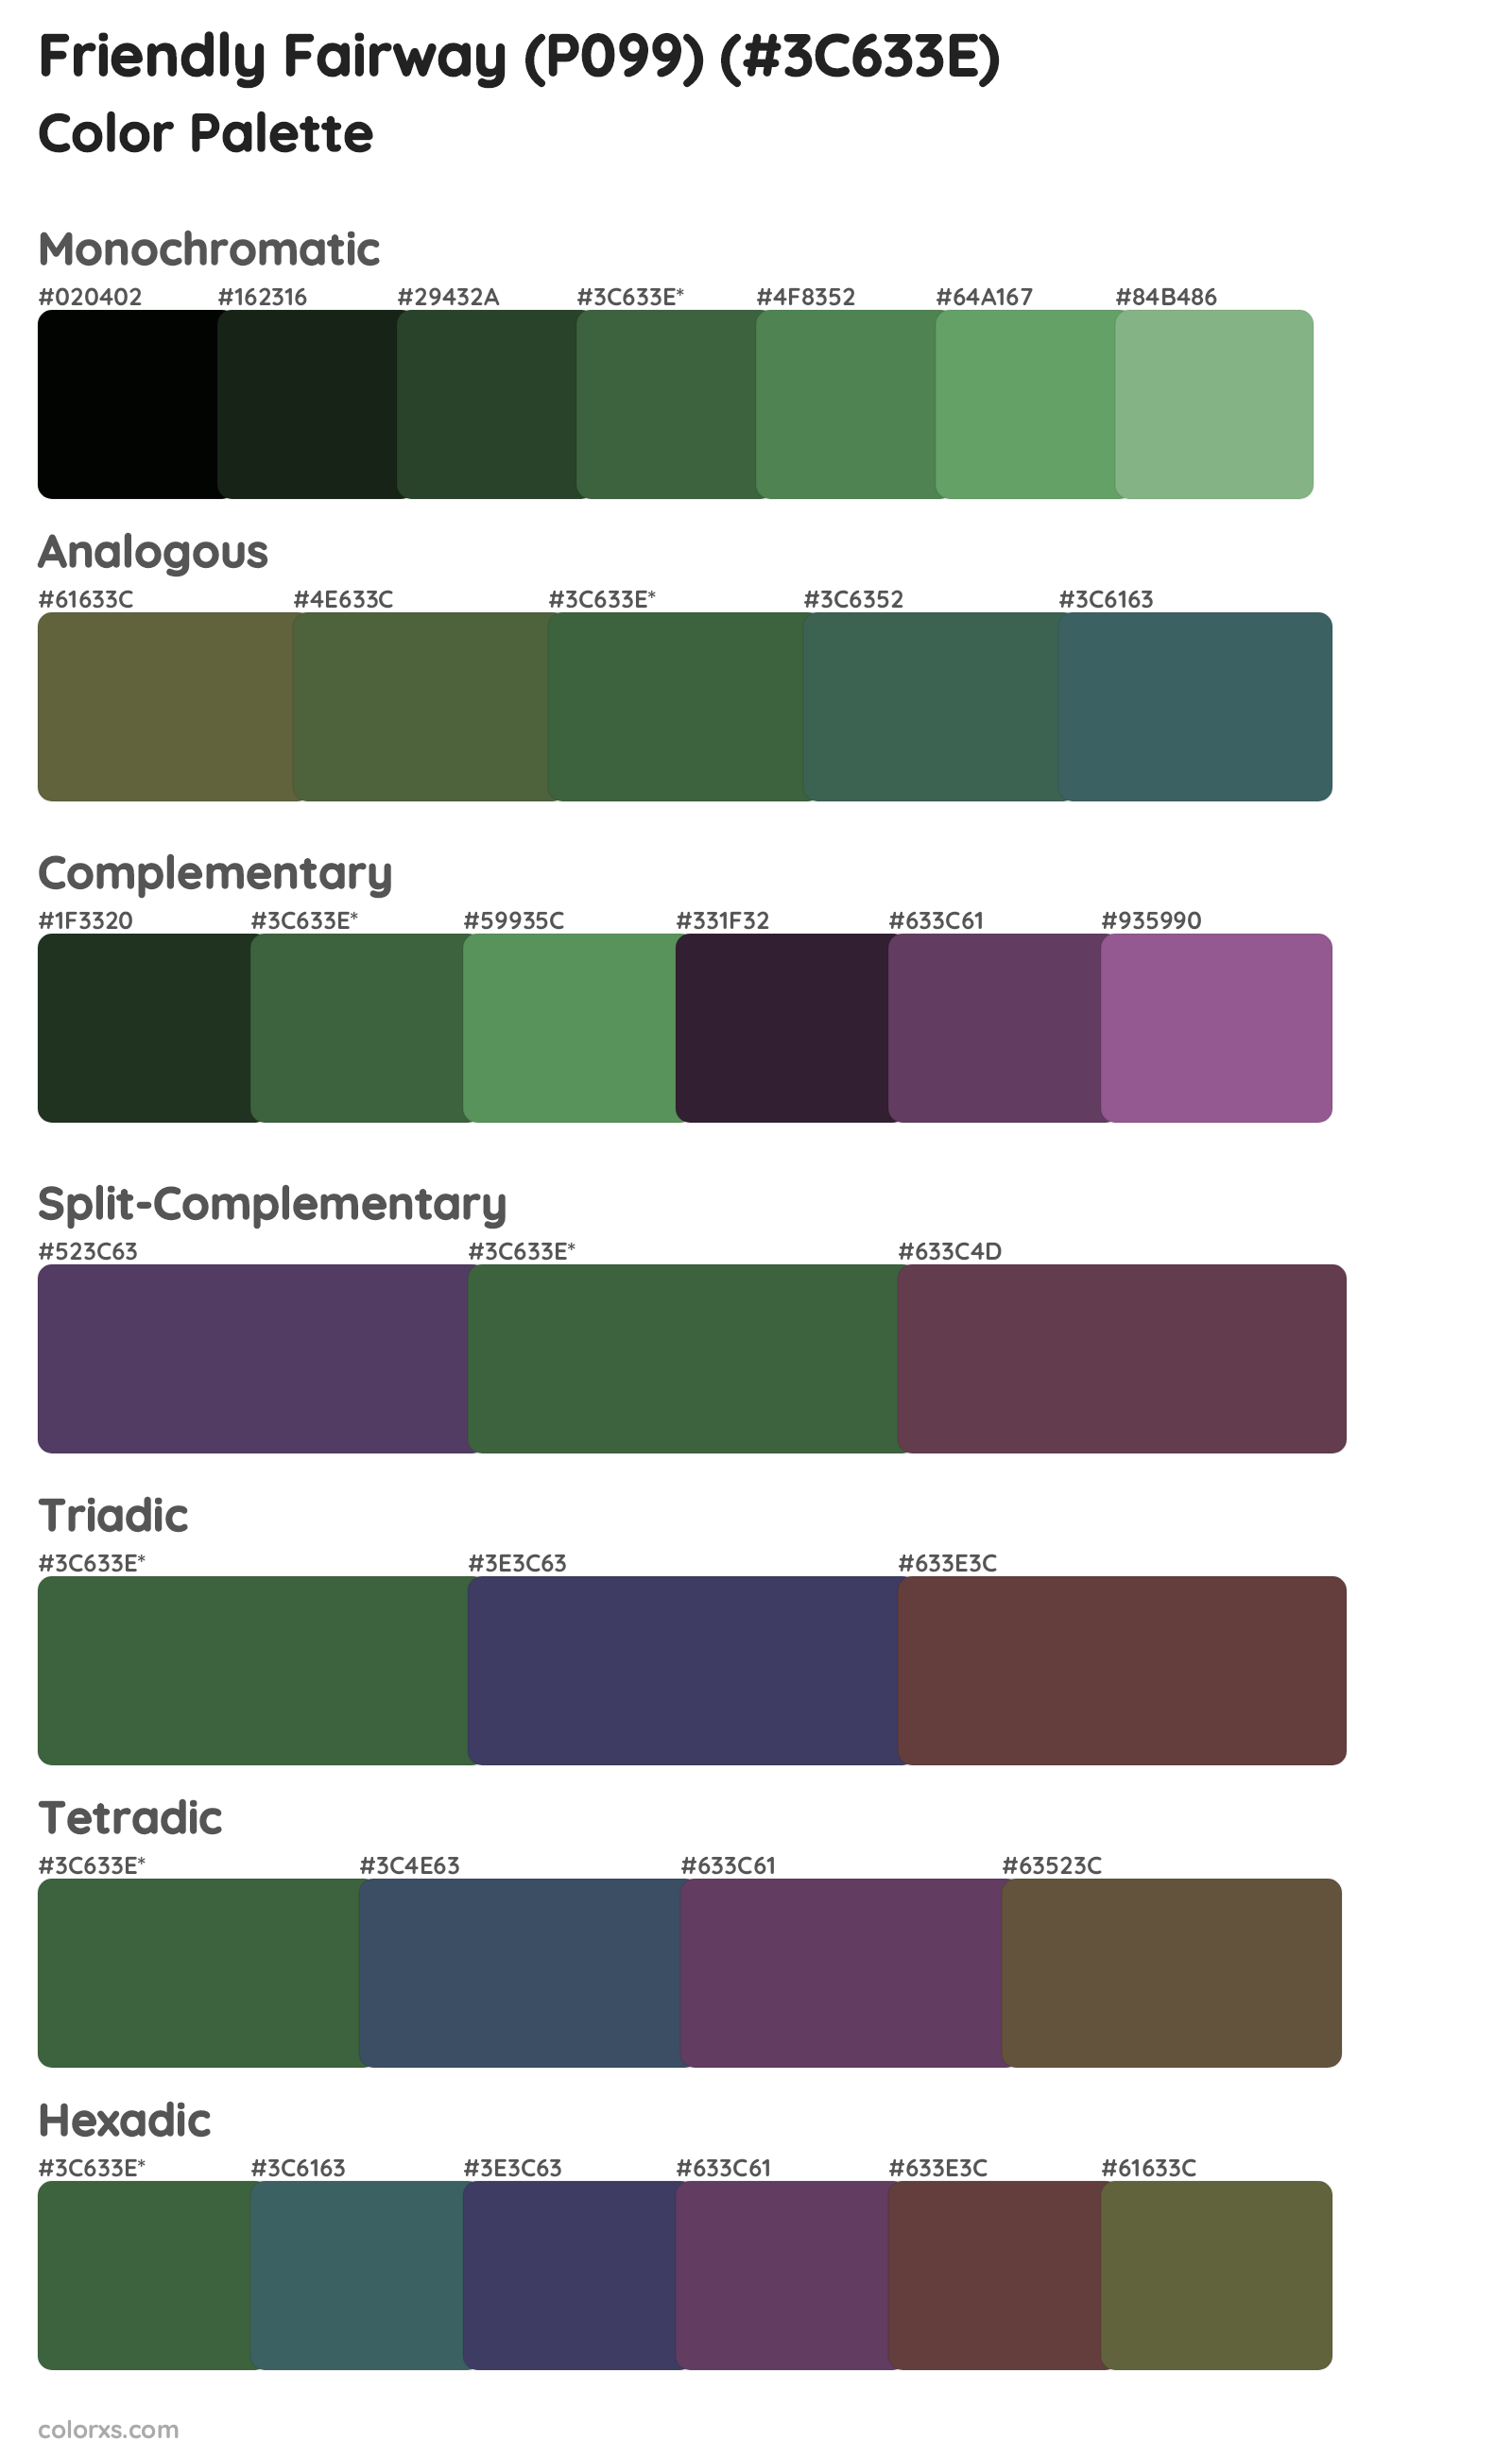 Friendly Fairway (P099) Color Scheme Palettes